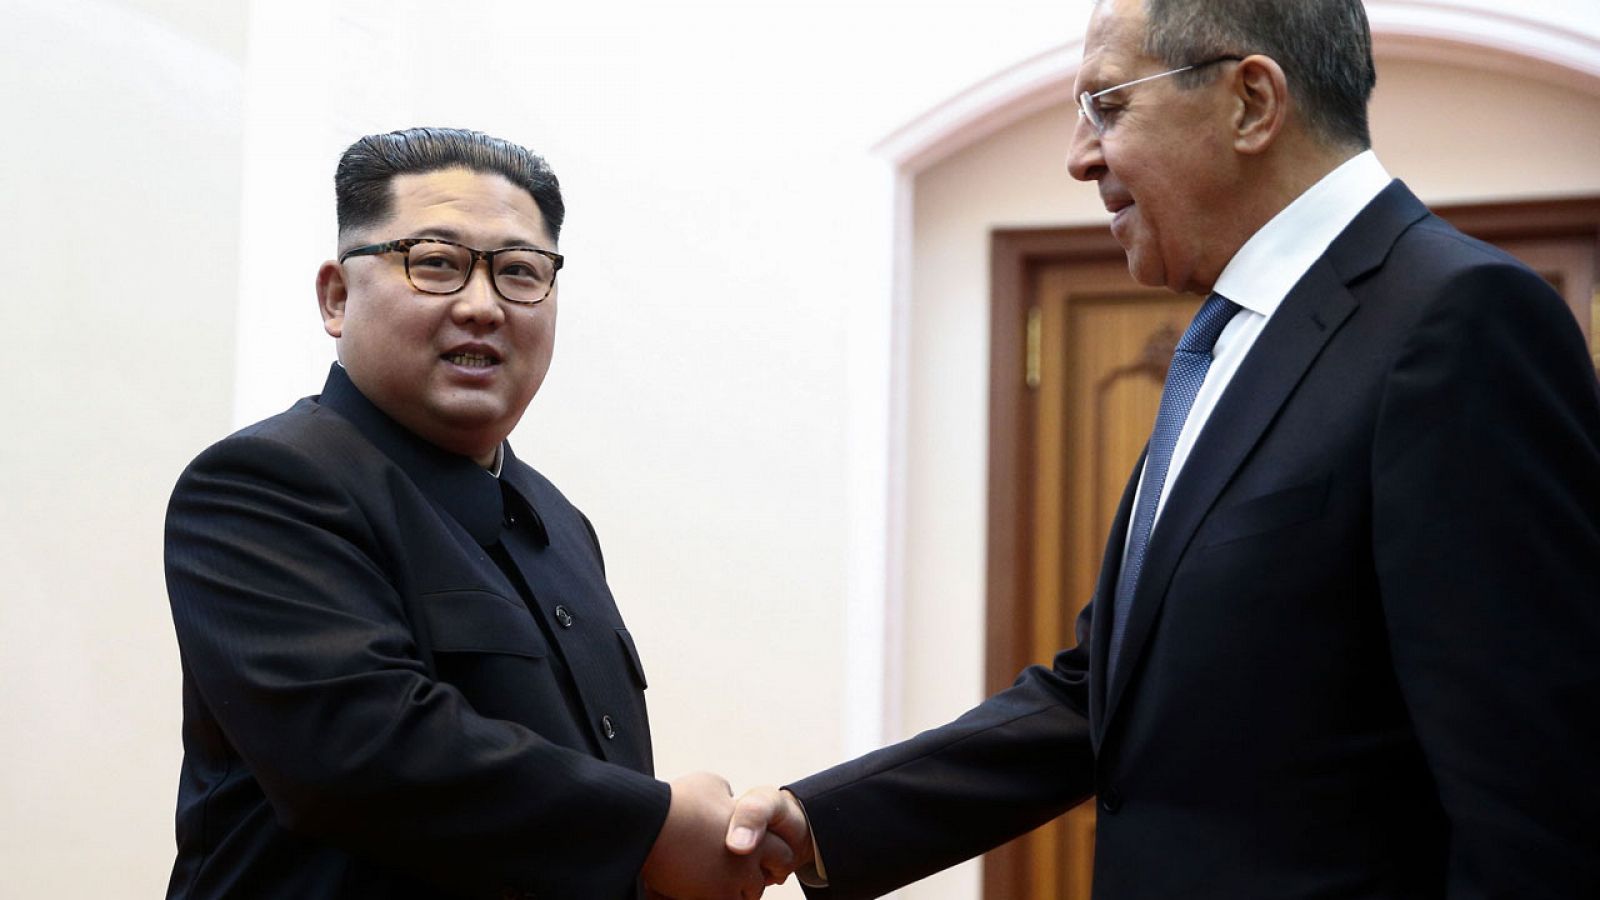 Kim Jong-un reitera el compromiso de desnuclearización de forma "progresiva"